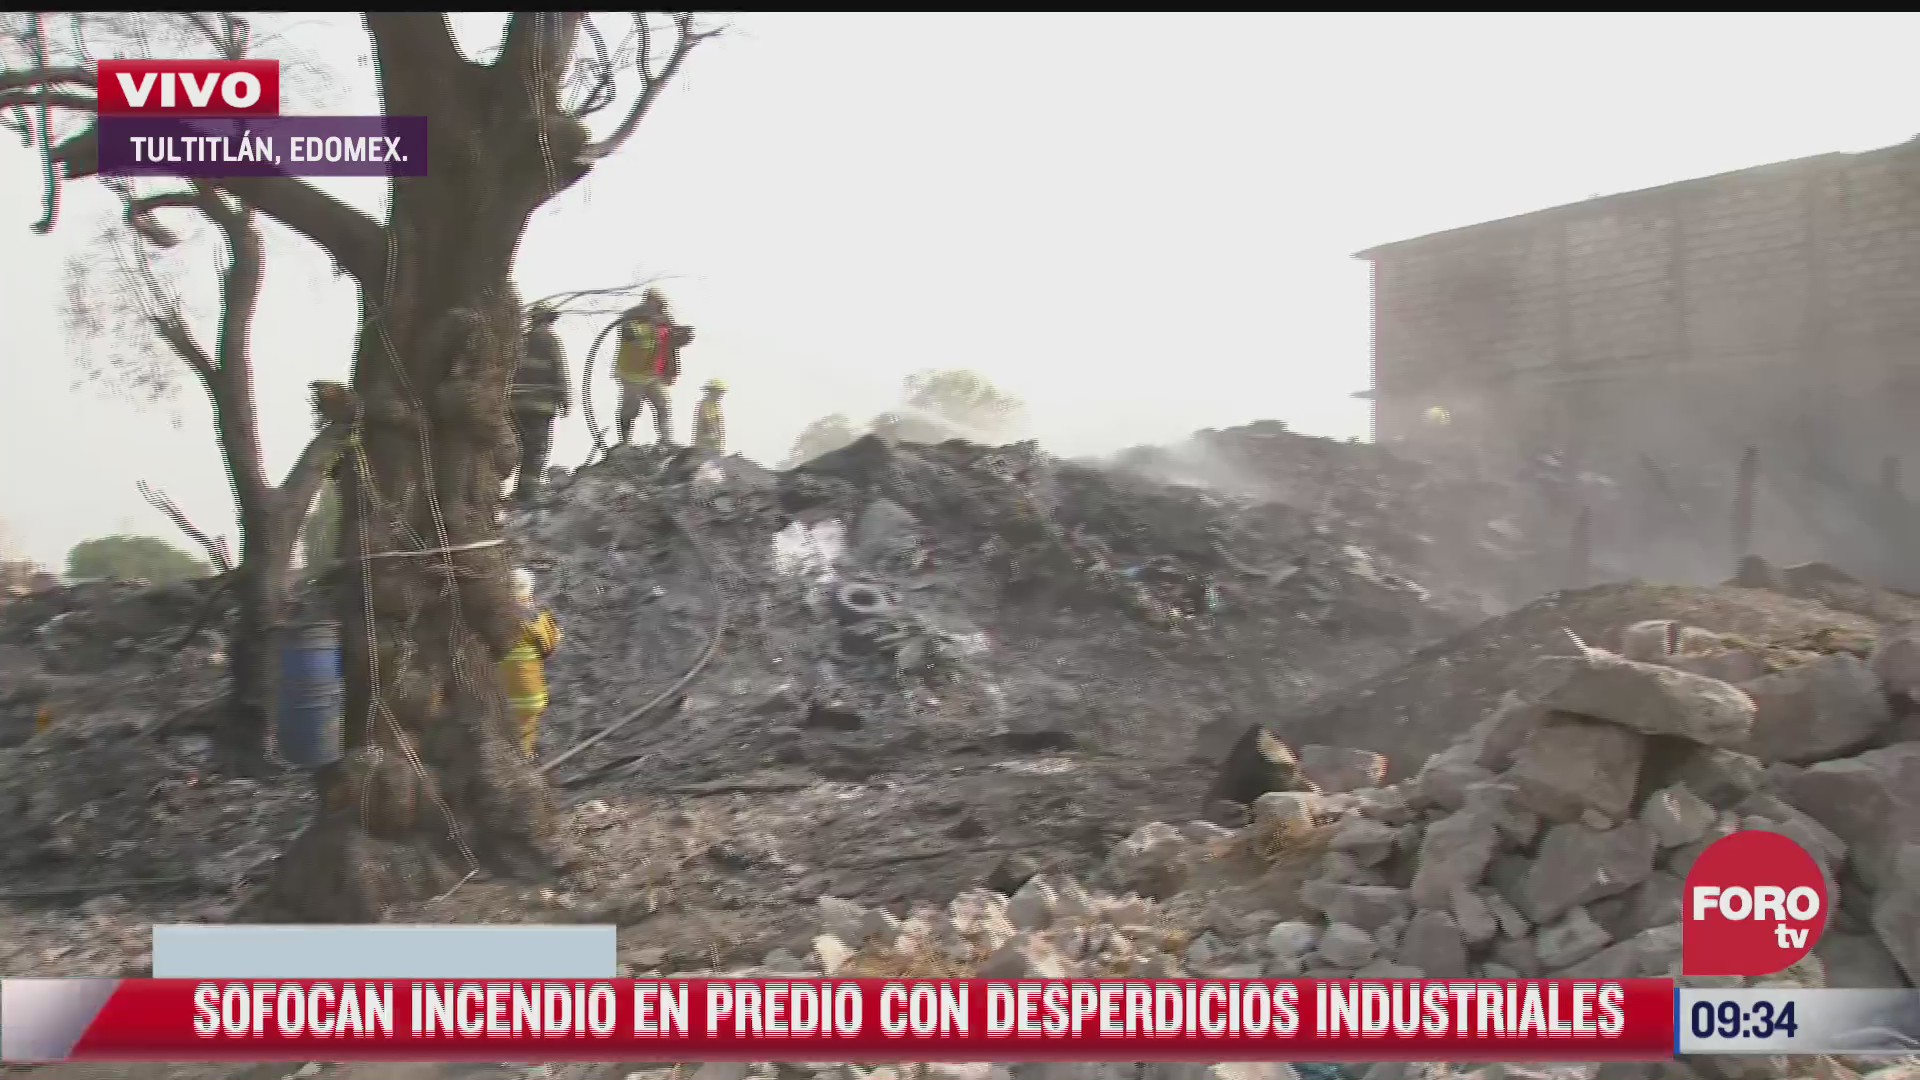 sofocan incendio en predio con desperdicios industriales en tultitlan